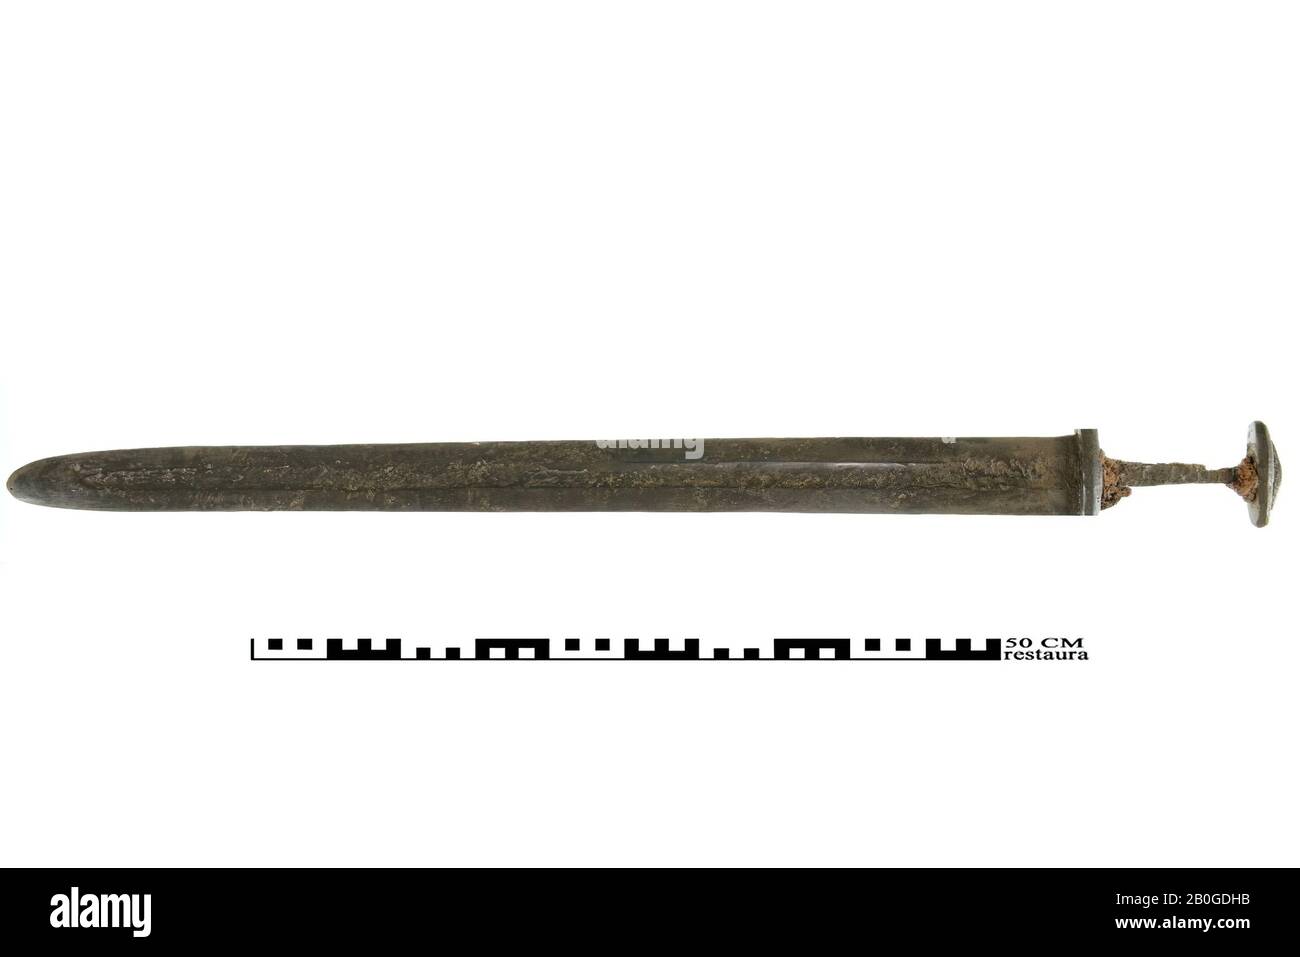 Originariamente 4 frammenti di una spada di ferro merovingia, restaurata in un tutt'uno., spada, metallo, ferro, L. 83,4 cm, medievale, Olanda del Sud, Katwijk, Katwijk, Katwijk-Binnen Foto Stock